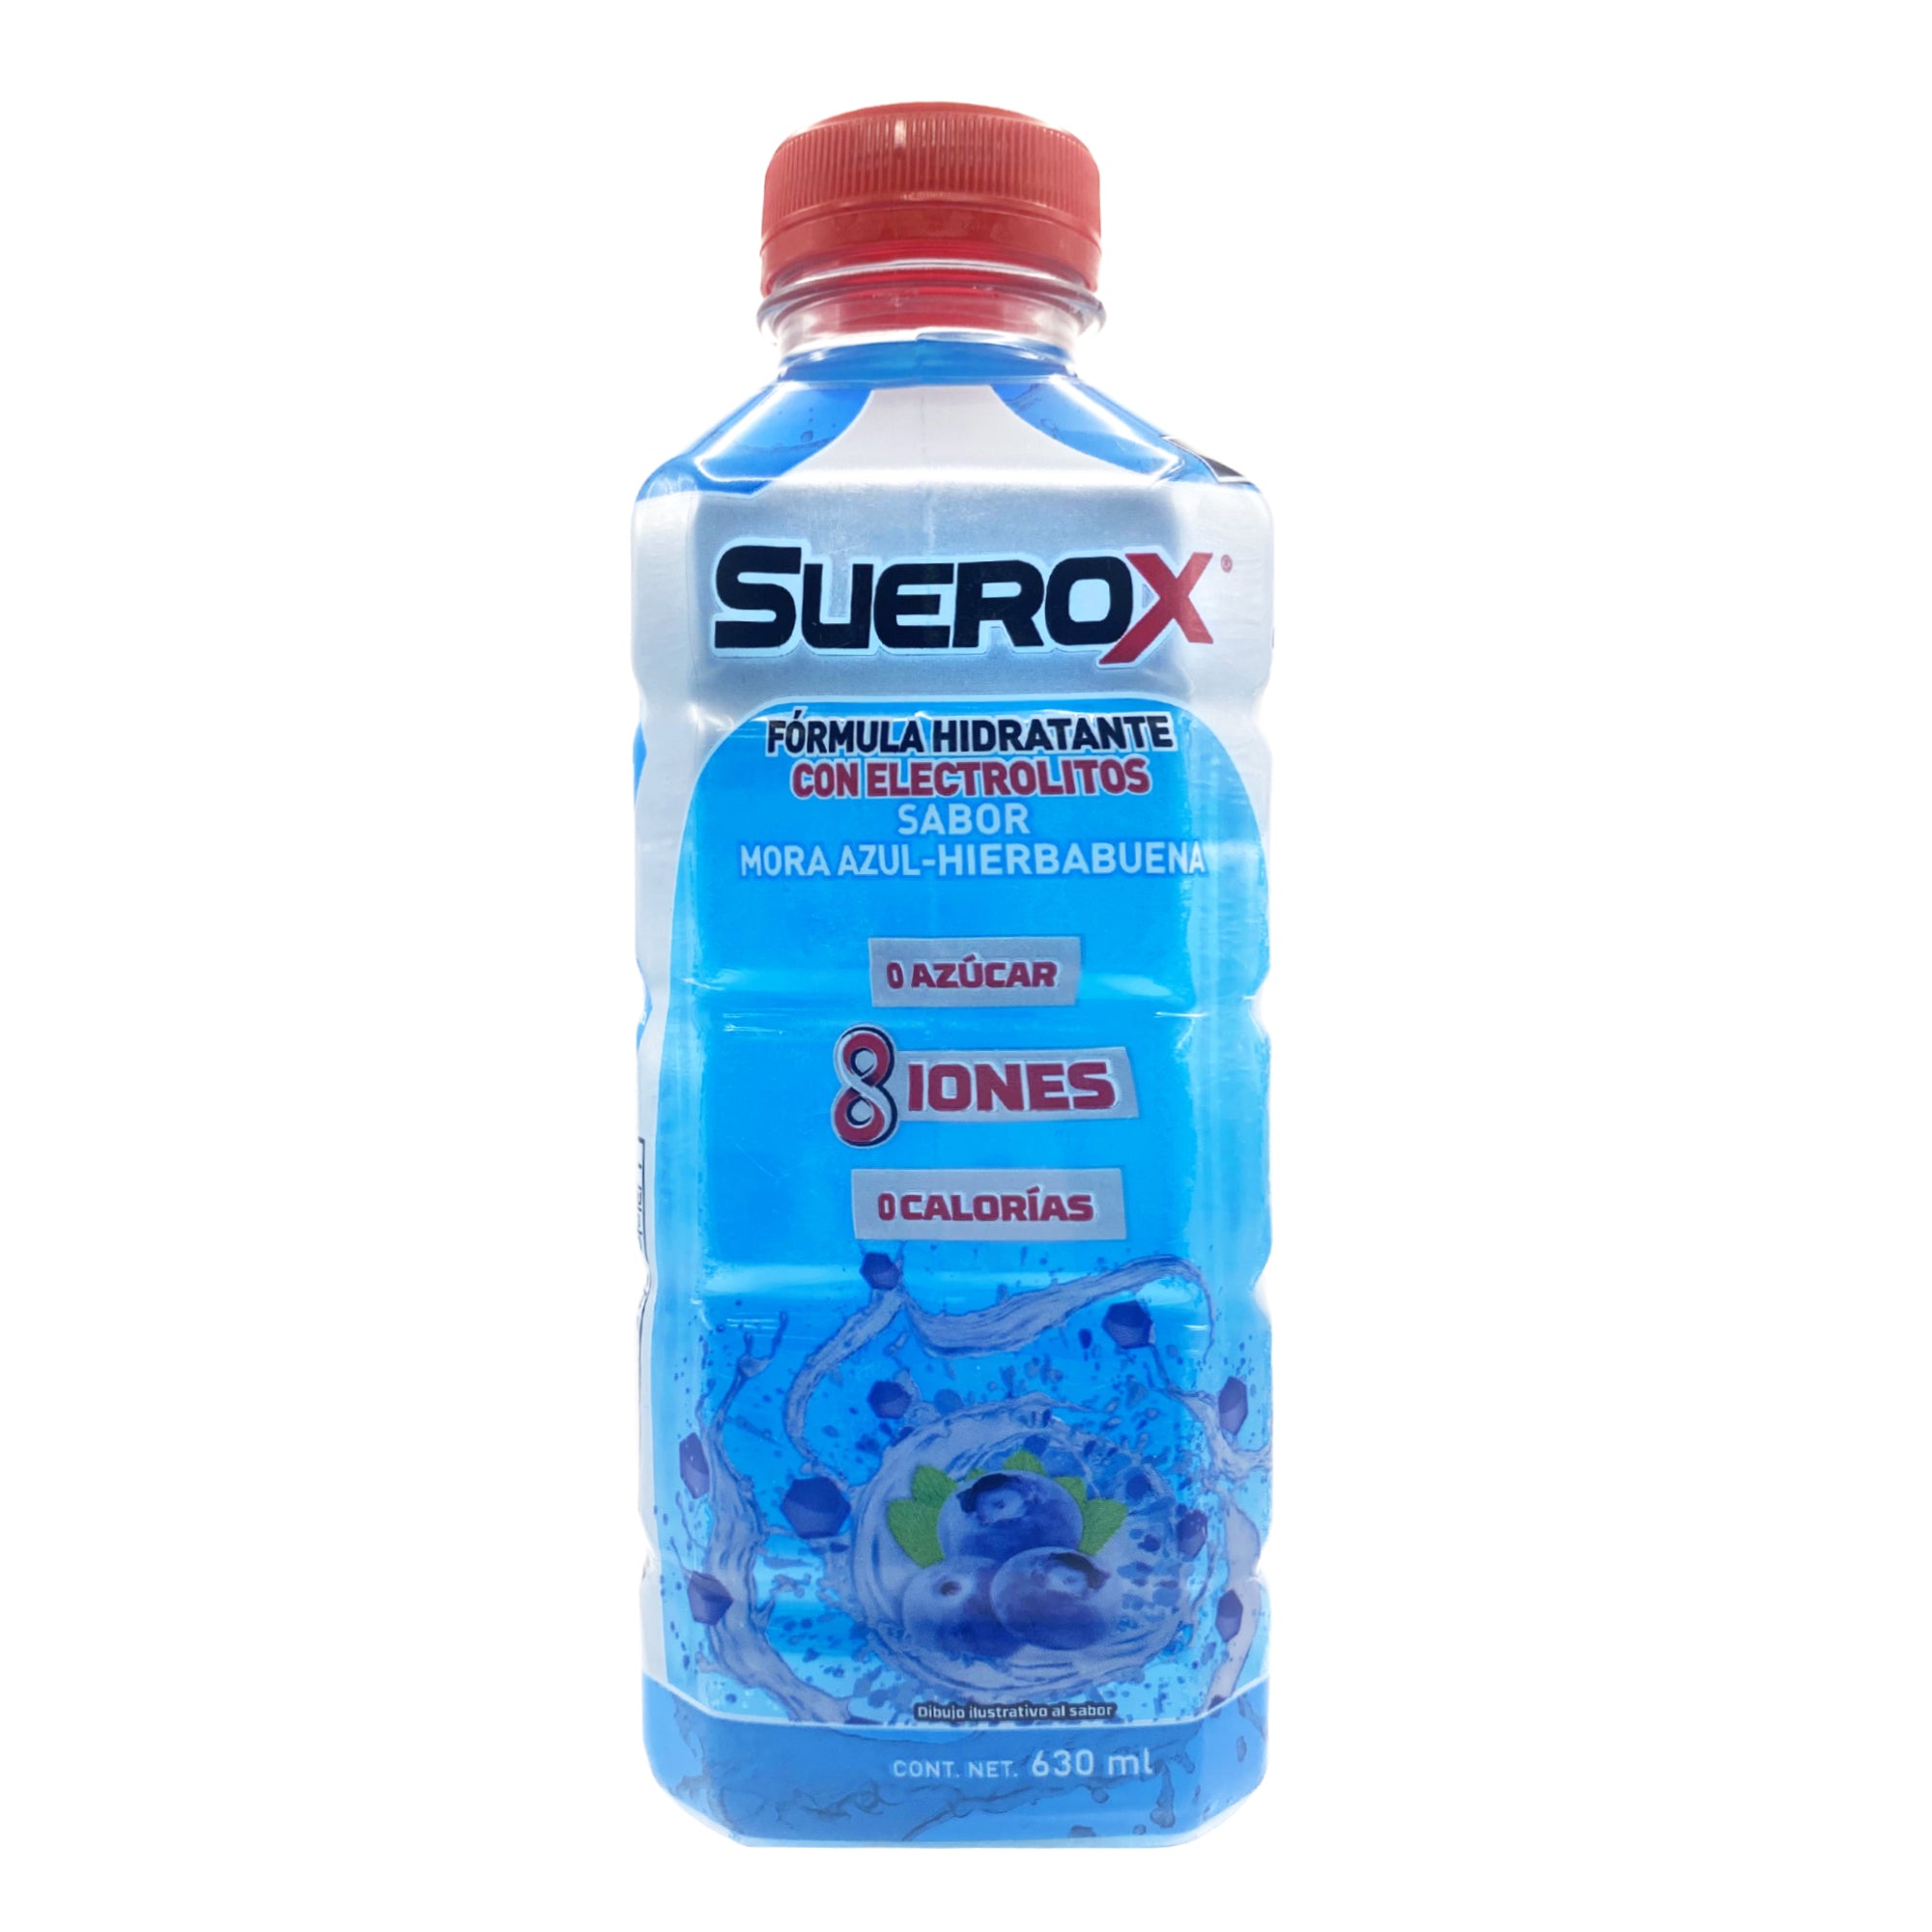 Suerox mora azul hierbabuena 630 ml